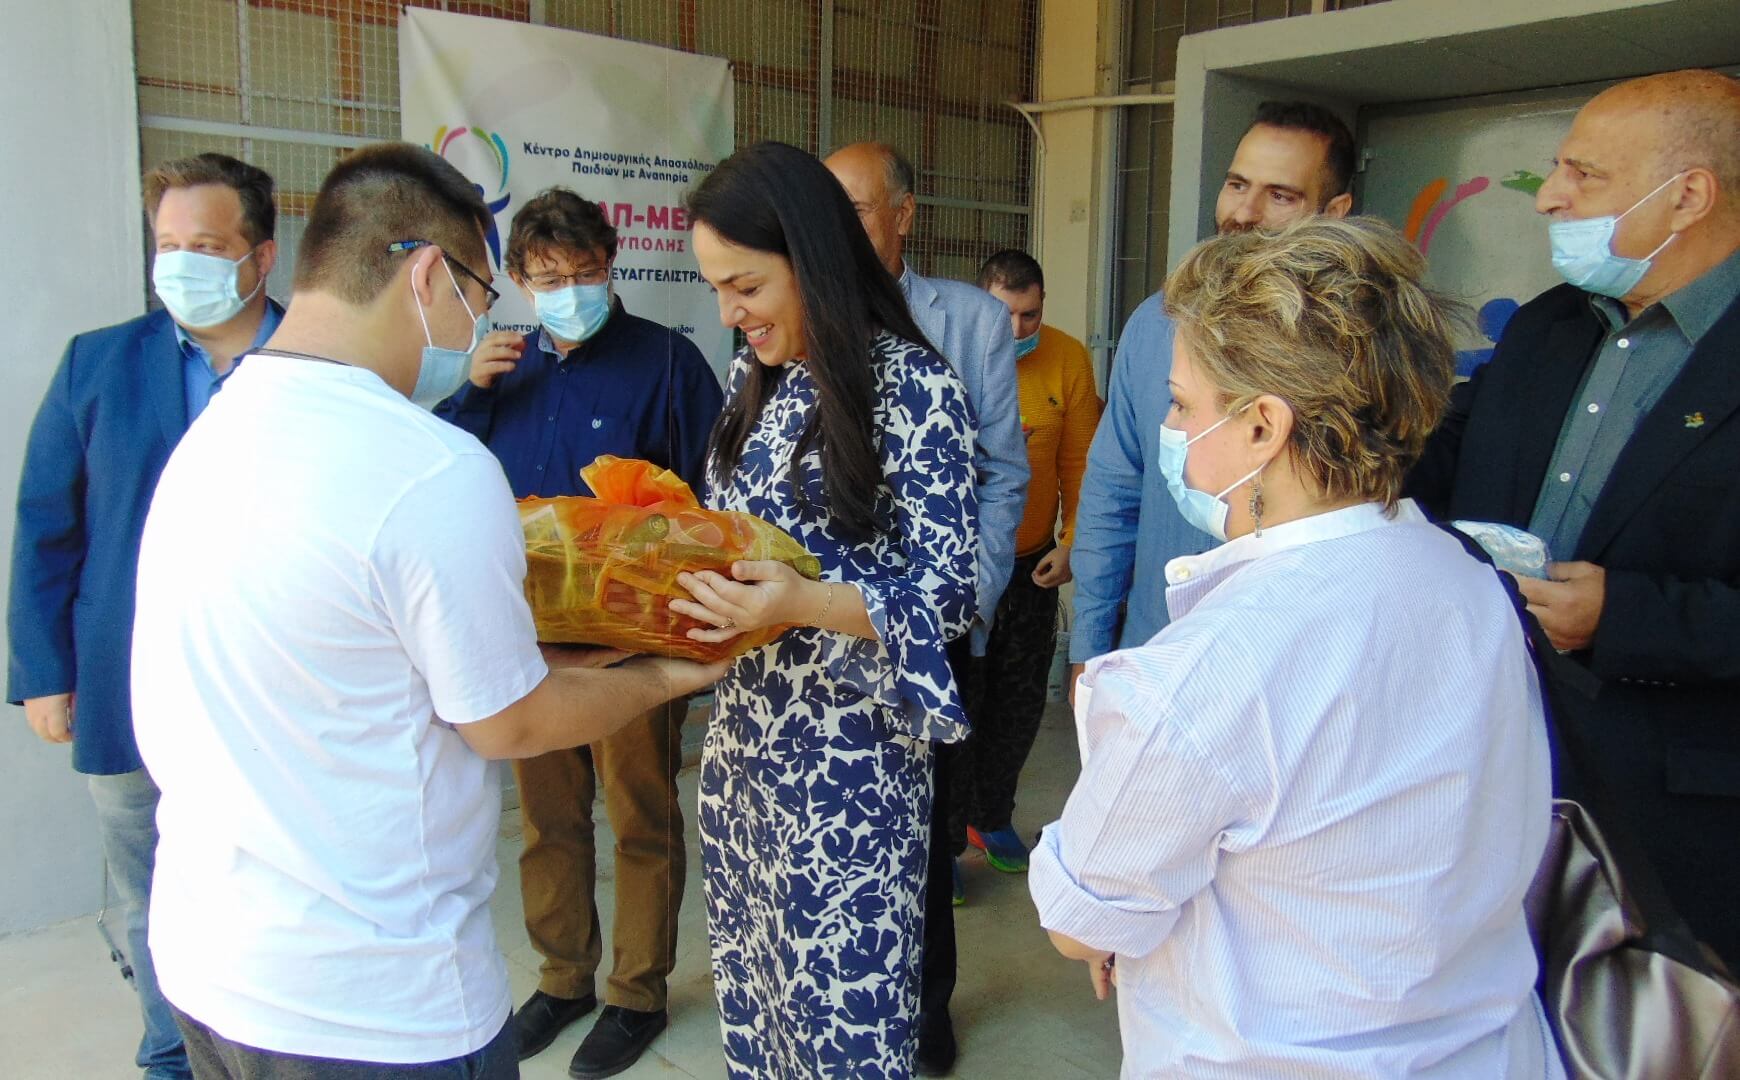 5 Στην Ηλιούπολη η Υφυπουργός Δόμνα Μιχαηλίδου - Επισκέφθηκε Το ΚΔΑΠ μεΑ 